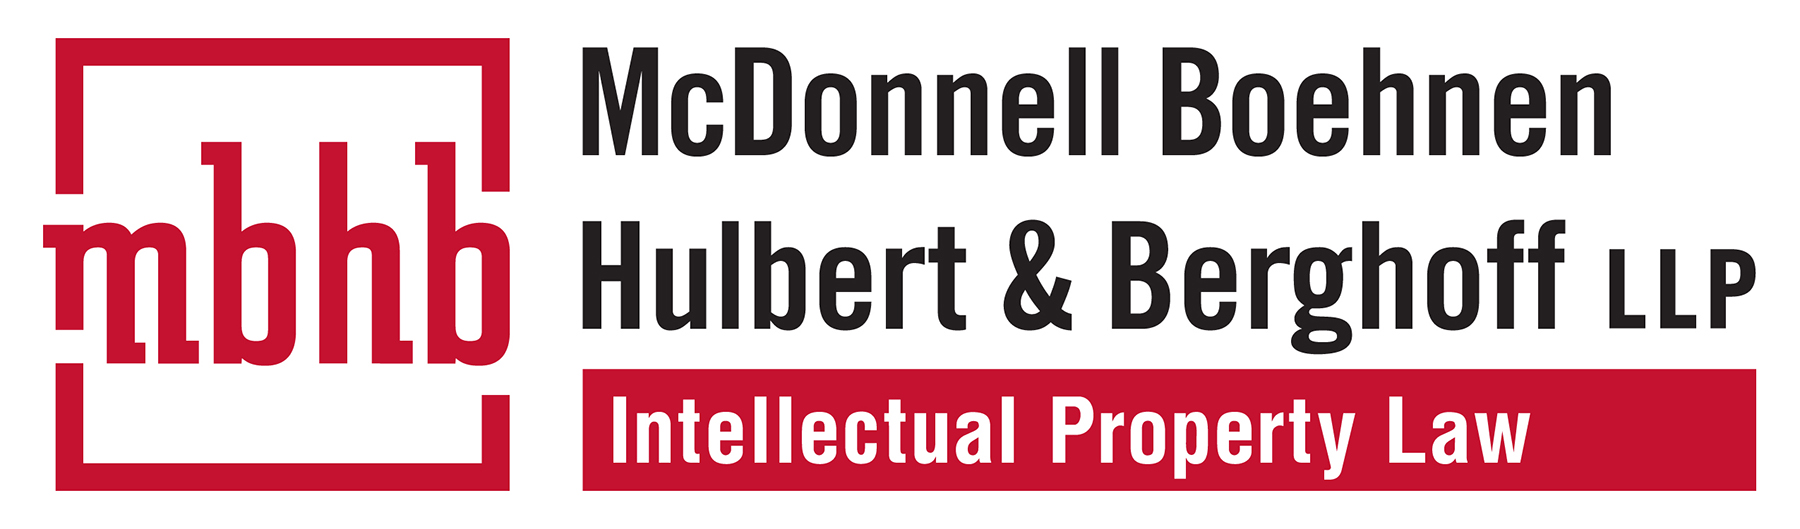 McDonnell Boehnen Hulbert and Bergoff LLP